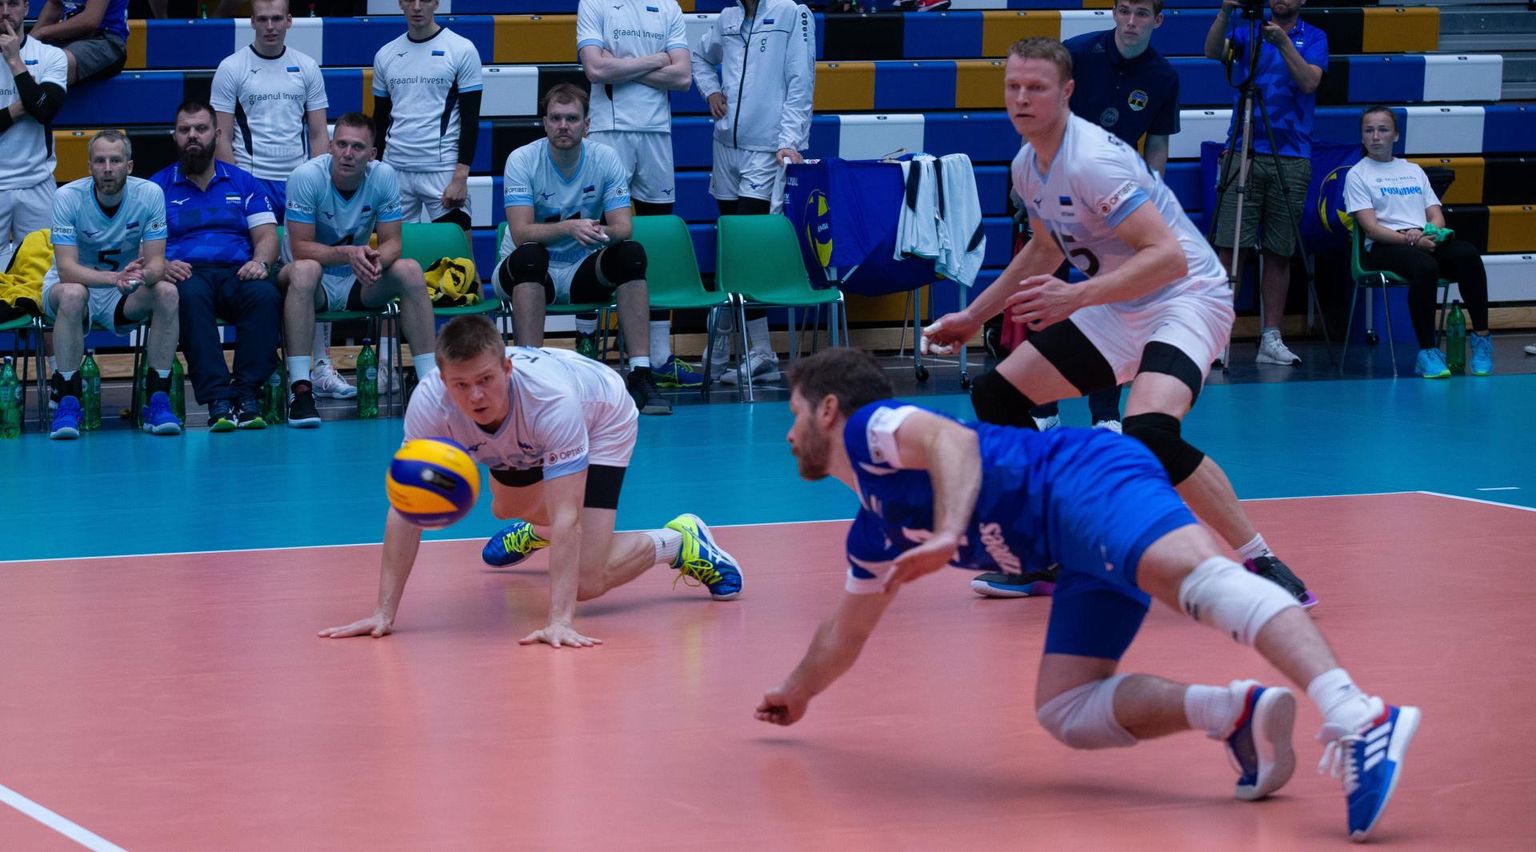 Eesti koondis võitles 0:2 kaotusseisust välja ja teenis 3:2 võidu.
 